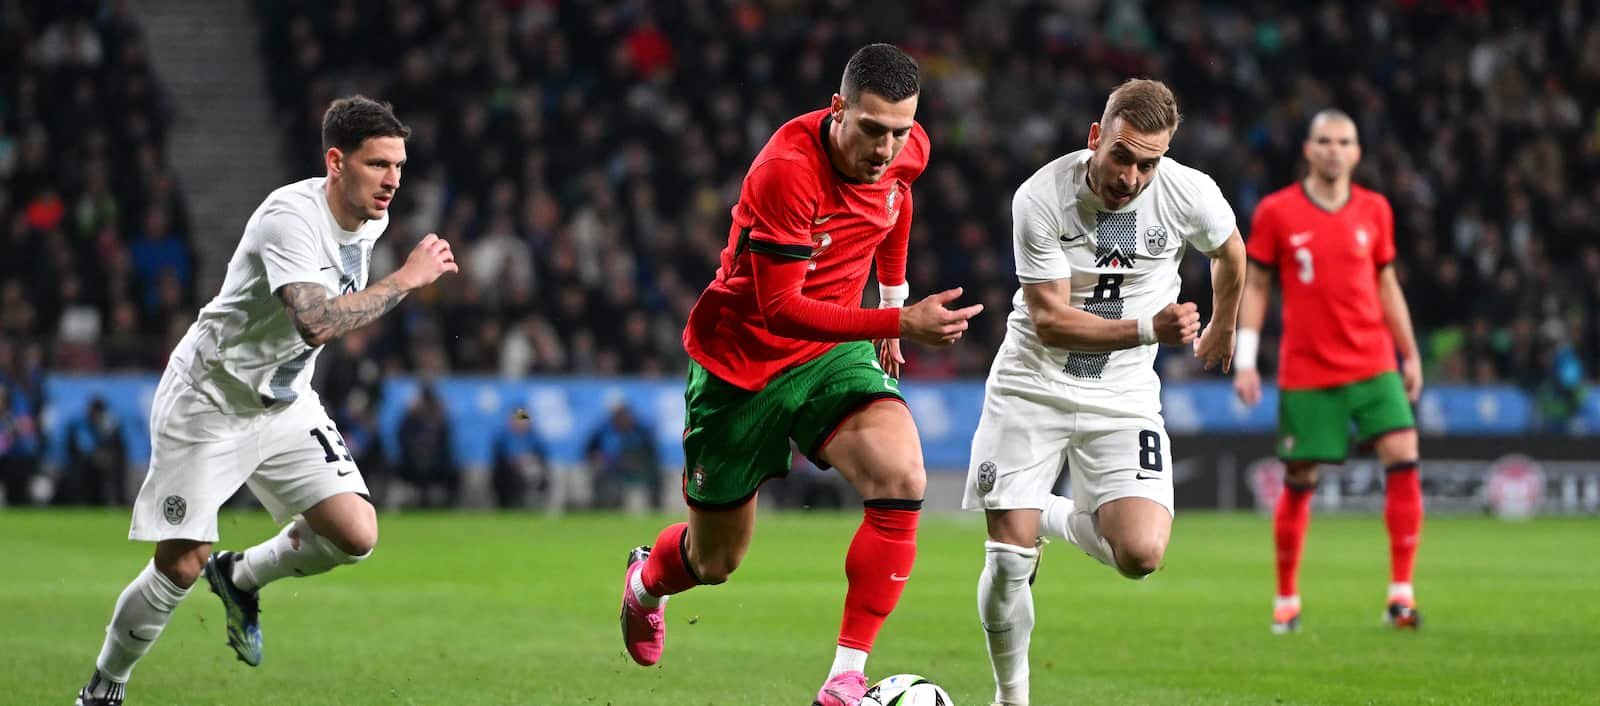 Diogo Dalot e Portugal chocados com a surpreendente derrota por 2 a 0 para a Eslovênia – Man United News and Transfer News